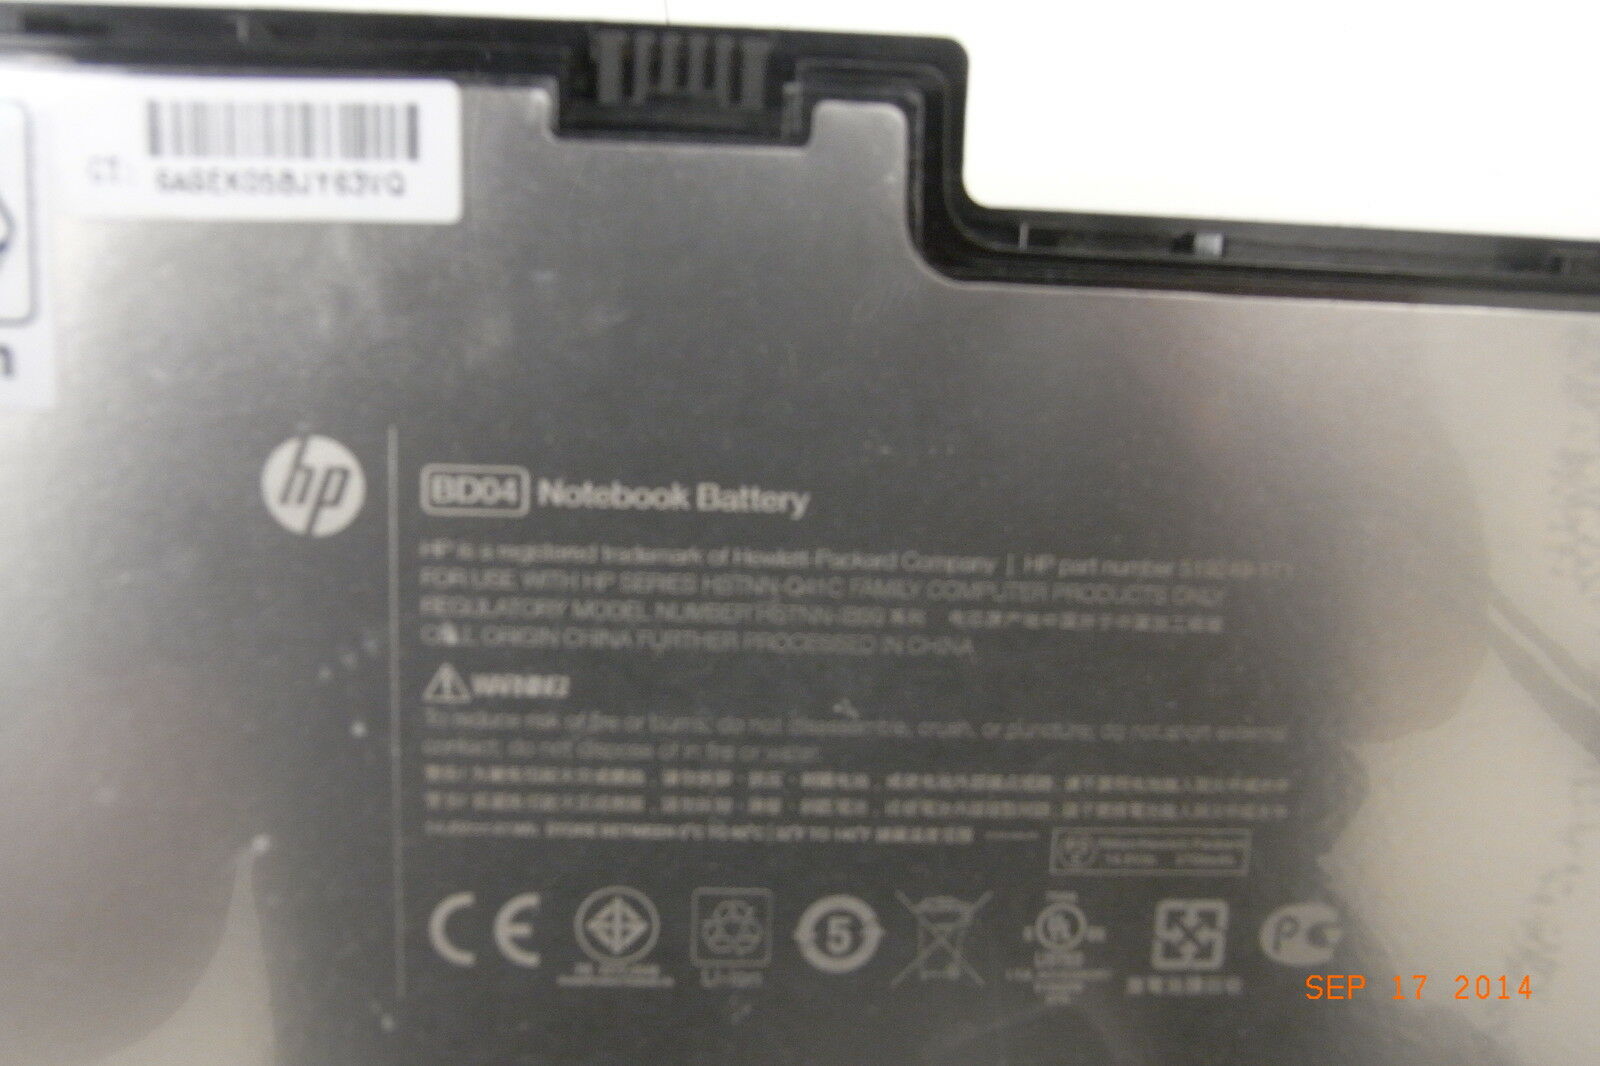 HP Original Notebook Battery BD04041-PL (4 Cell) 519249-171